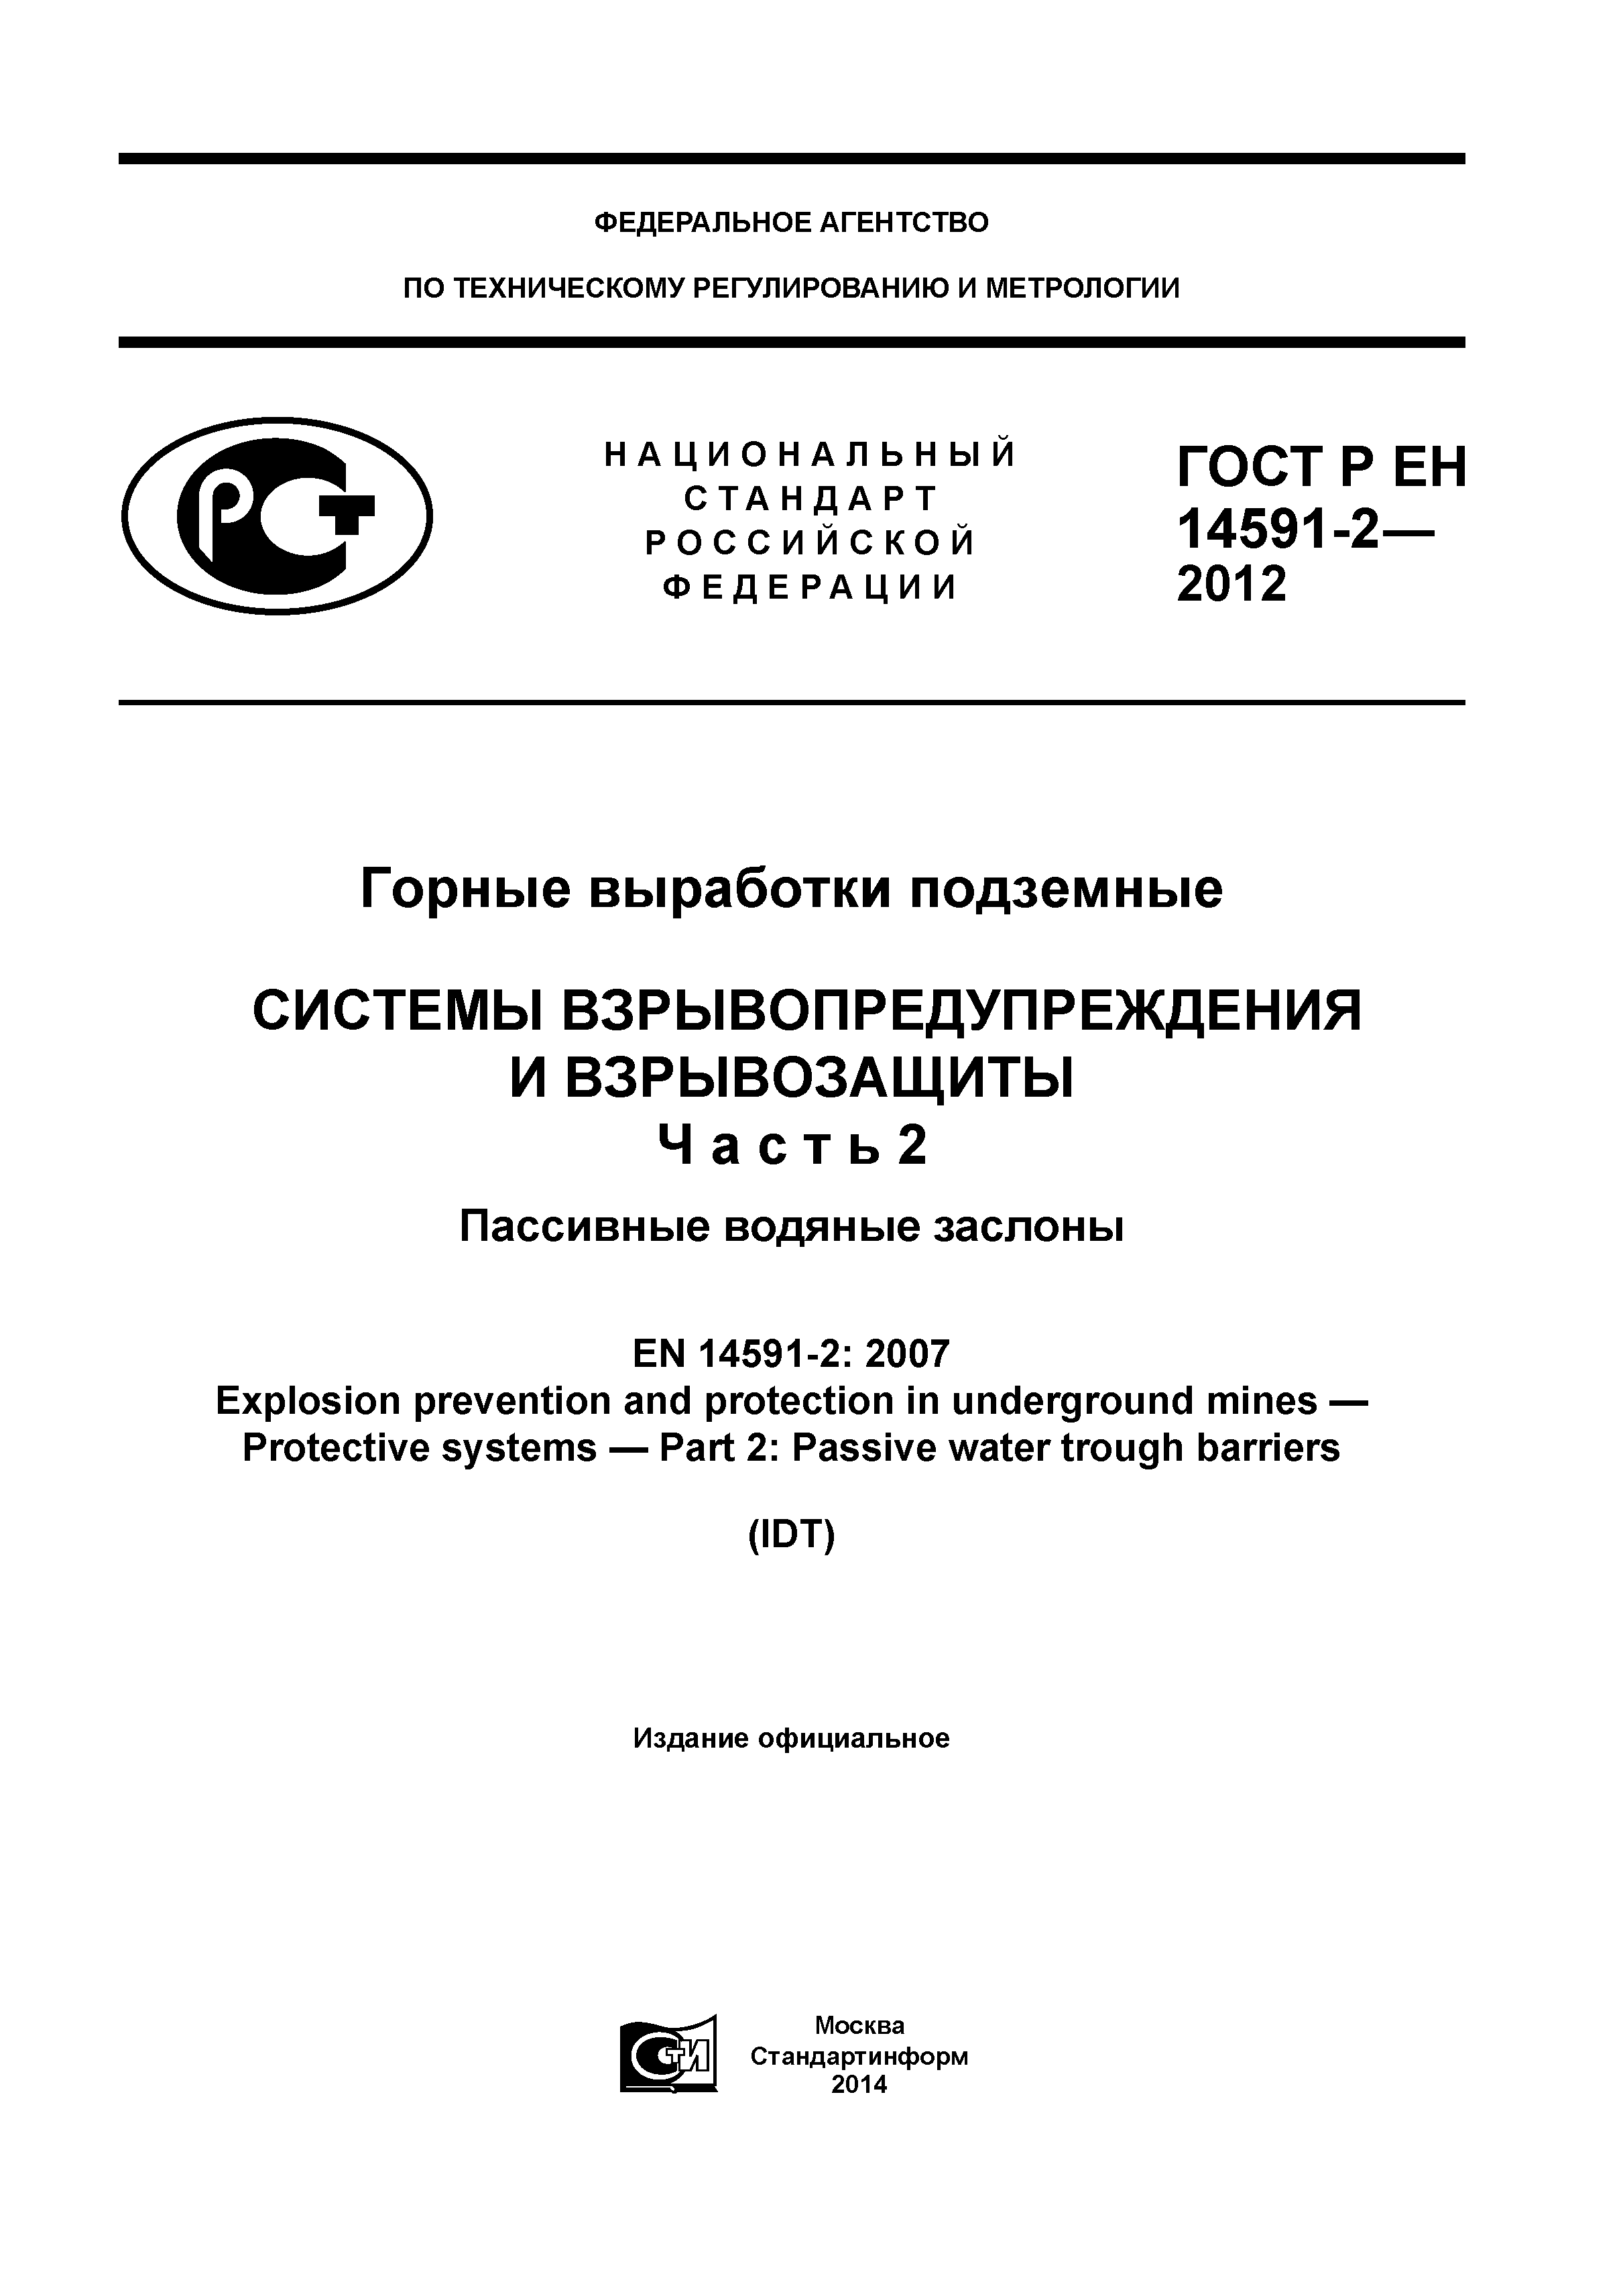 ГОСТ Р ЕН 14591-2-2012